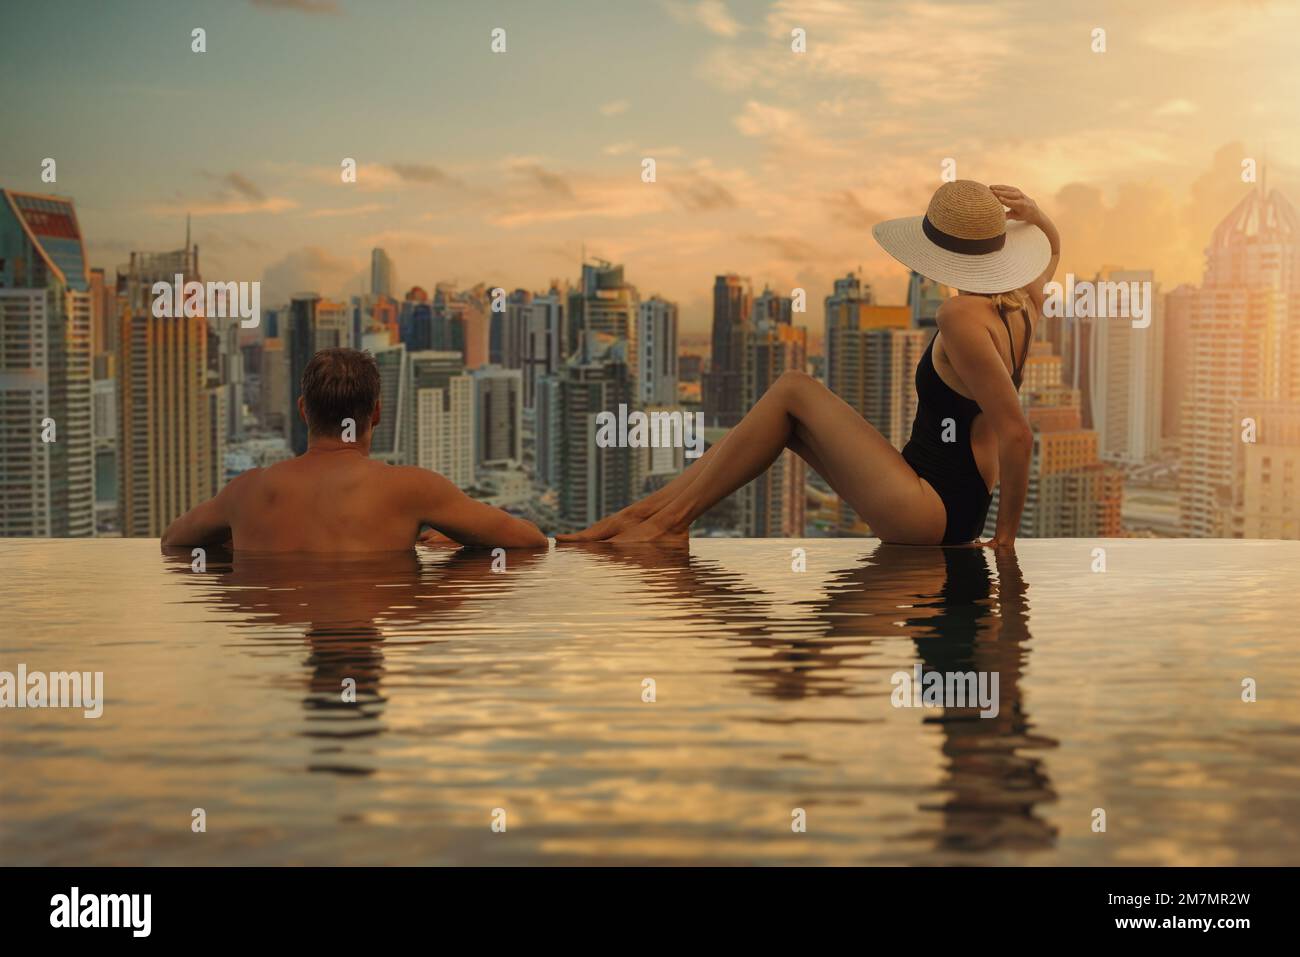 Ein Paar genießt die Skyline von Dubai mit Wolkenkratzer-Architektur vom Infinity Pool des Hotels bei Sonnenuntergang. Luxusurlaub und Reisen. Vereinigte Arabische Emirate Stockfoto